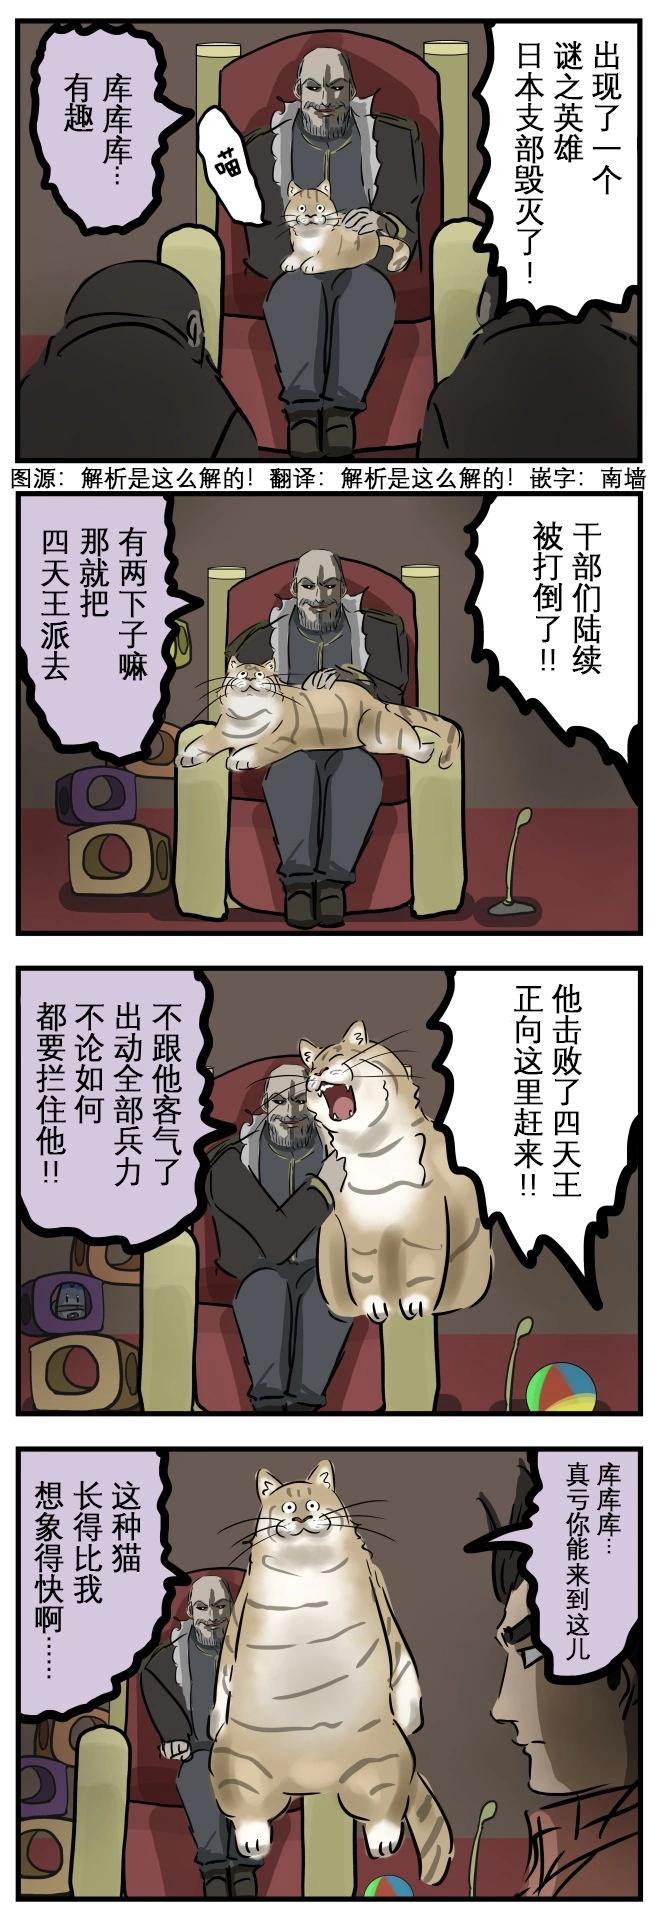 カコミスル老師四格合集 - 敵方boss的貓 - 1